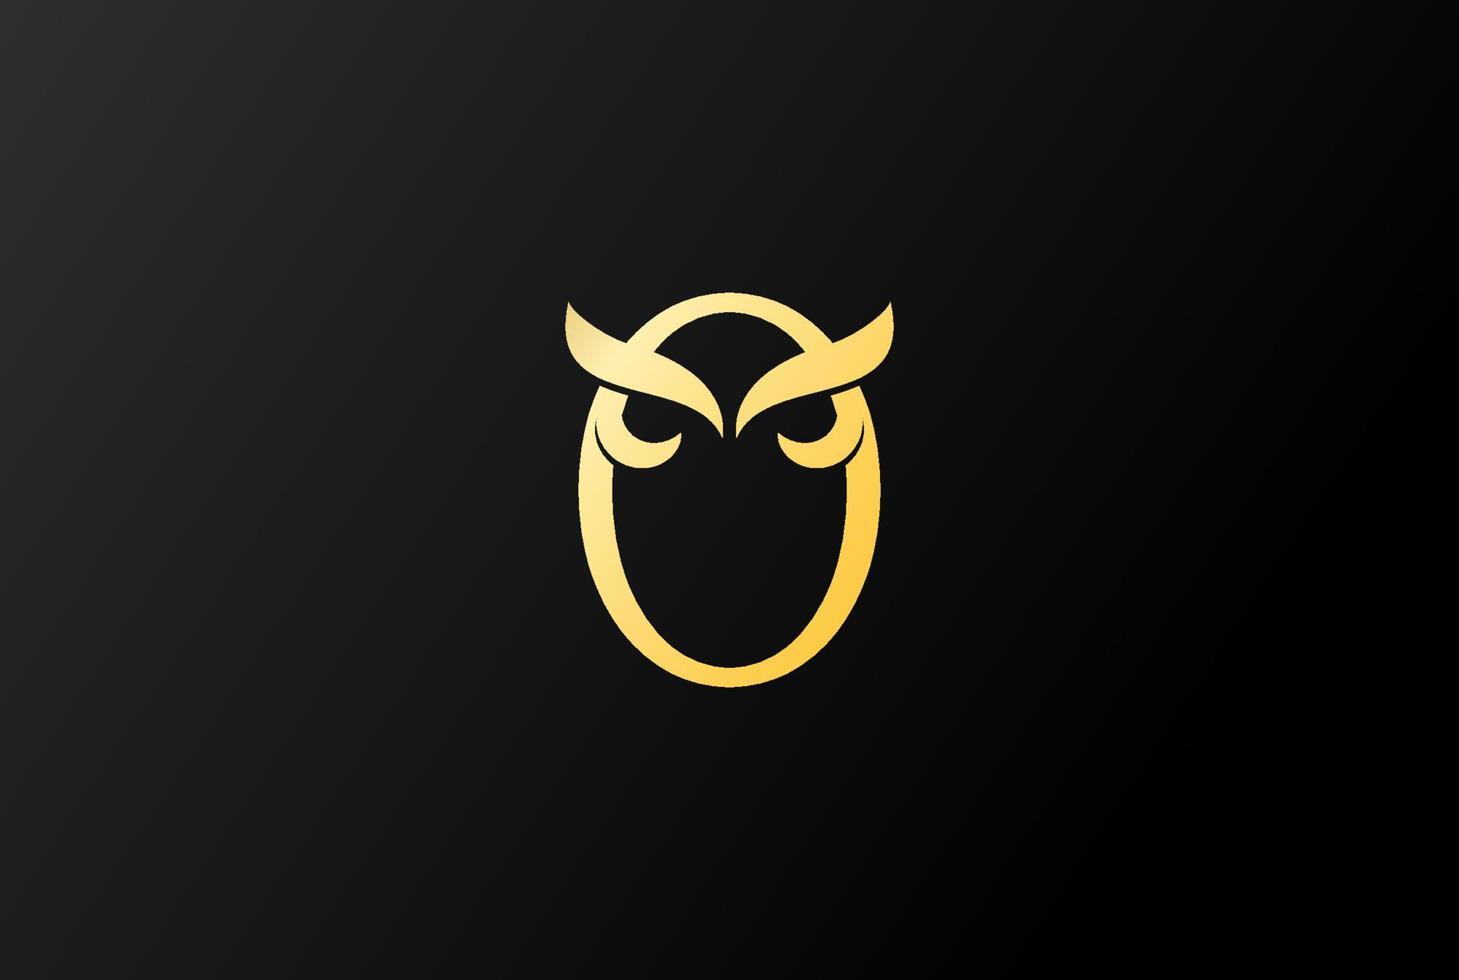 Golden Initial Letter O for Owl Bird Monogram Logo Design Vector